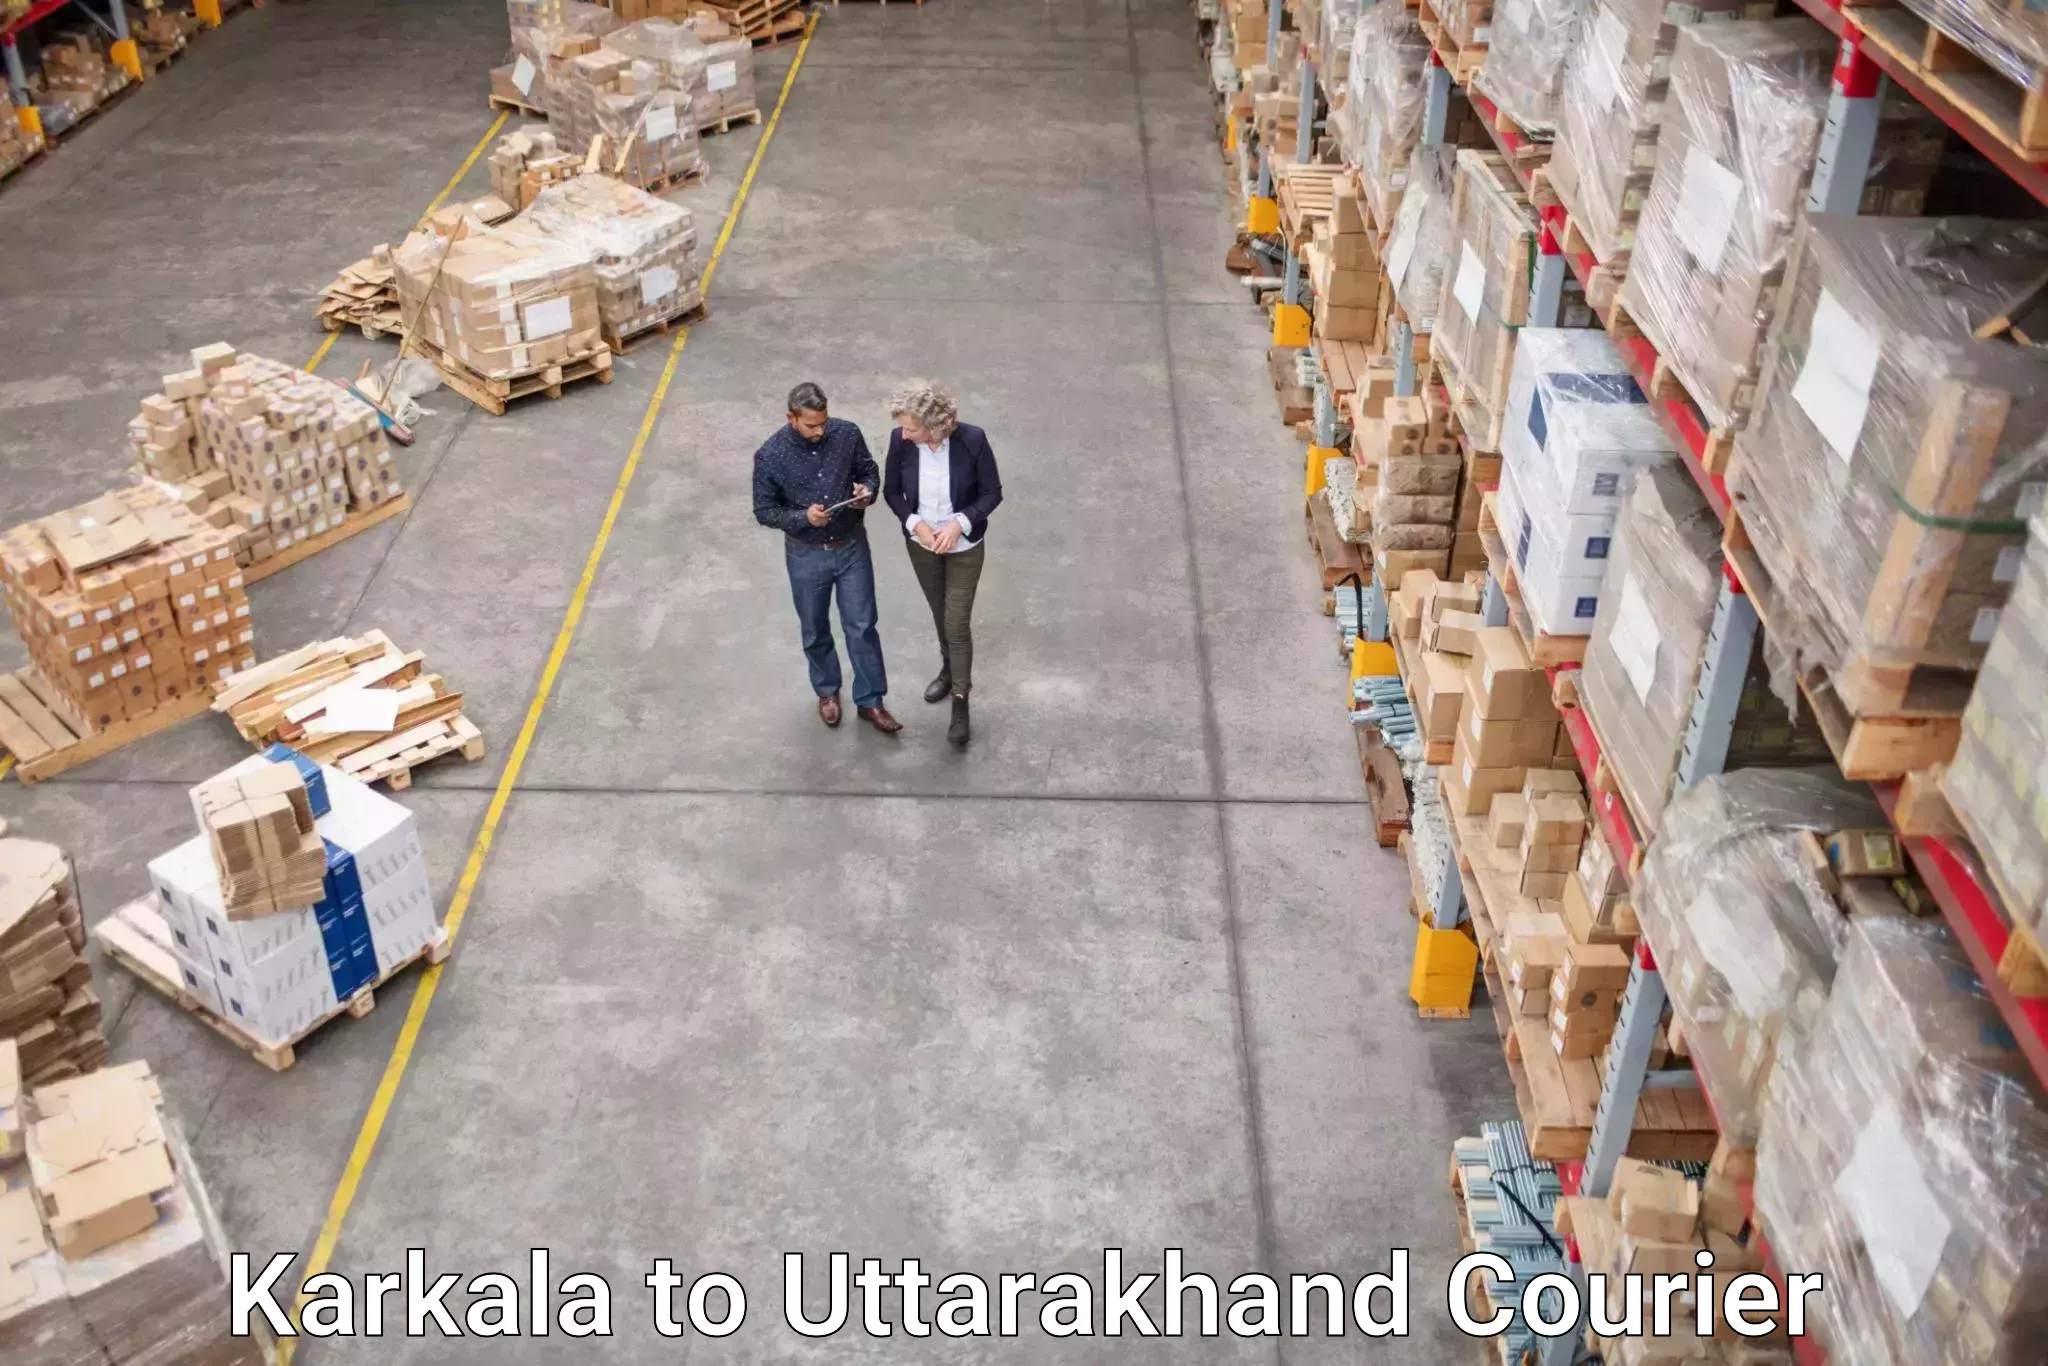 Special handling courier Karkala to Uttarakhand